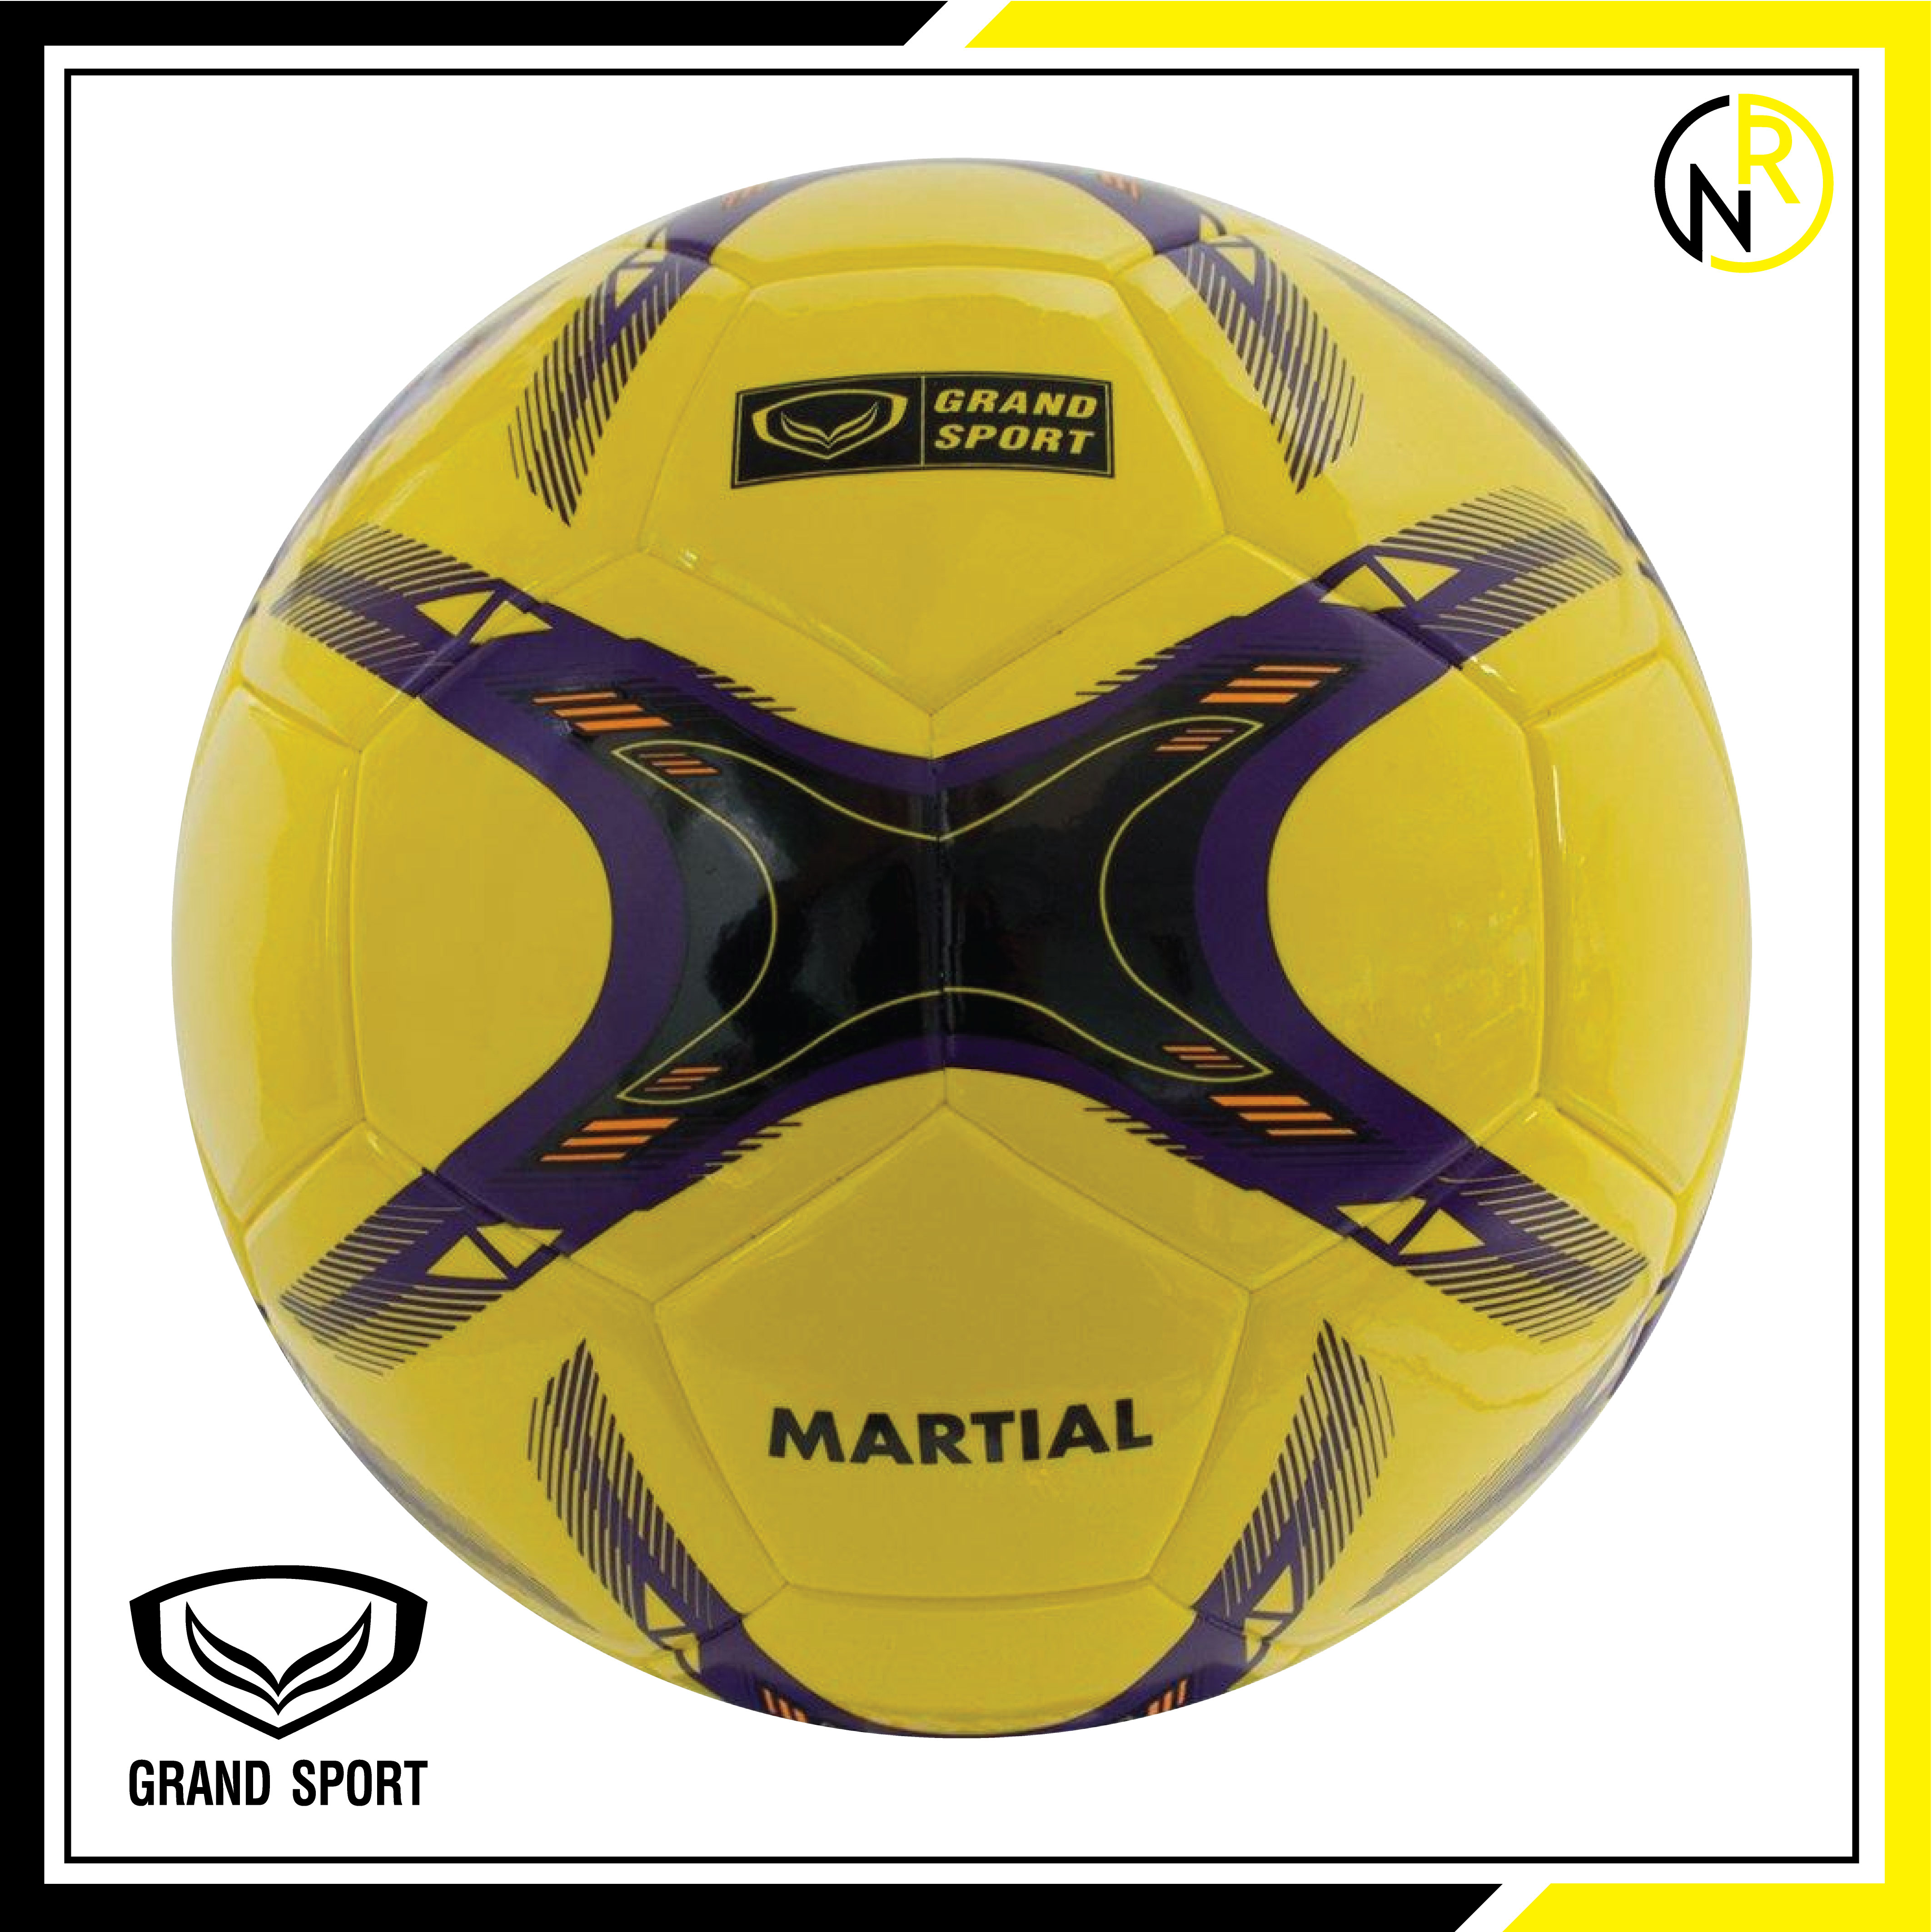 ลูกฟุตบอลไฮบริด แกรนด์สปอร์ต   เบอร์5 รหัส 331085  Martial Hybrid  แถมเข็มและตาข่ายใส่บอล ของแท้100%